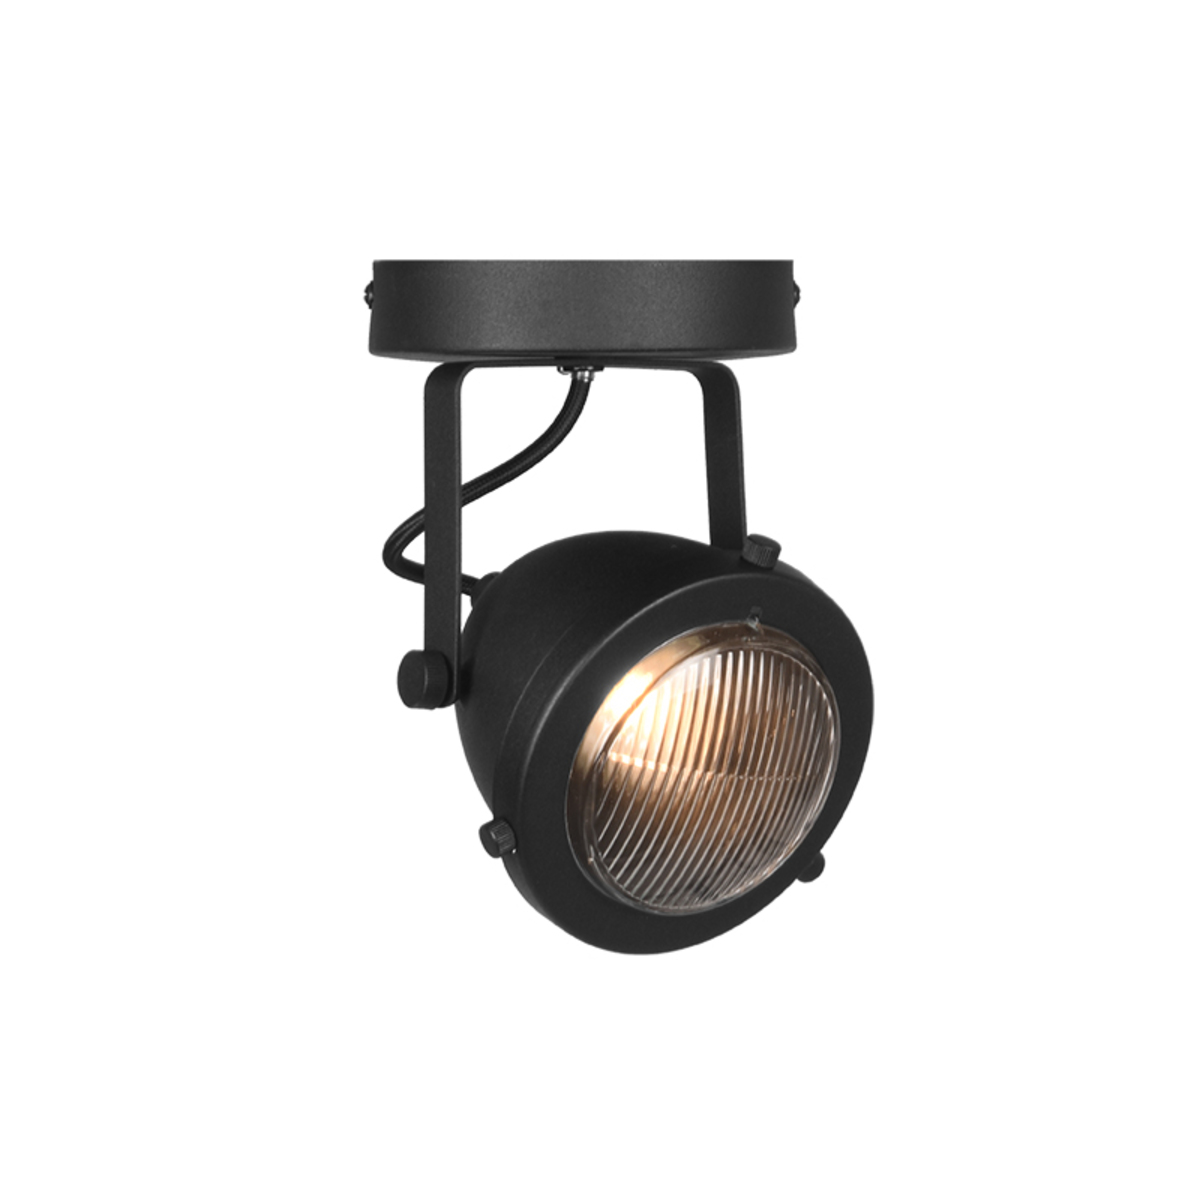 LABEL51 Spot Moto led - Zwart - Metaal - 1 Lichts